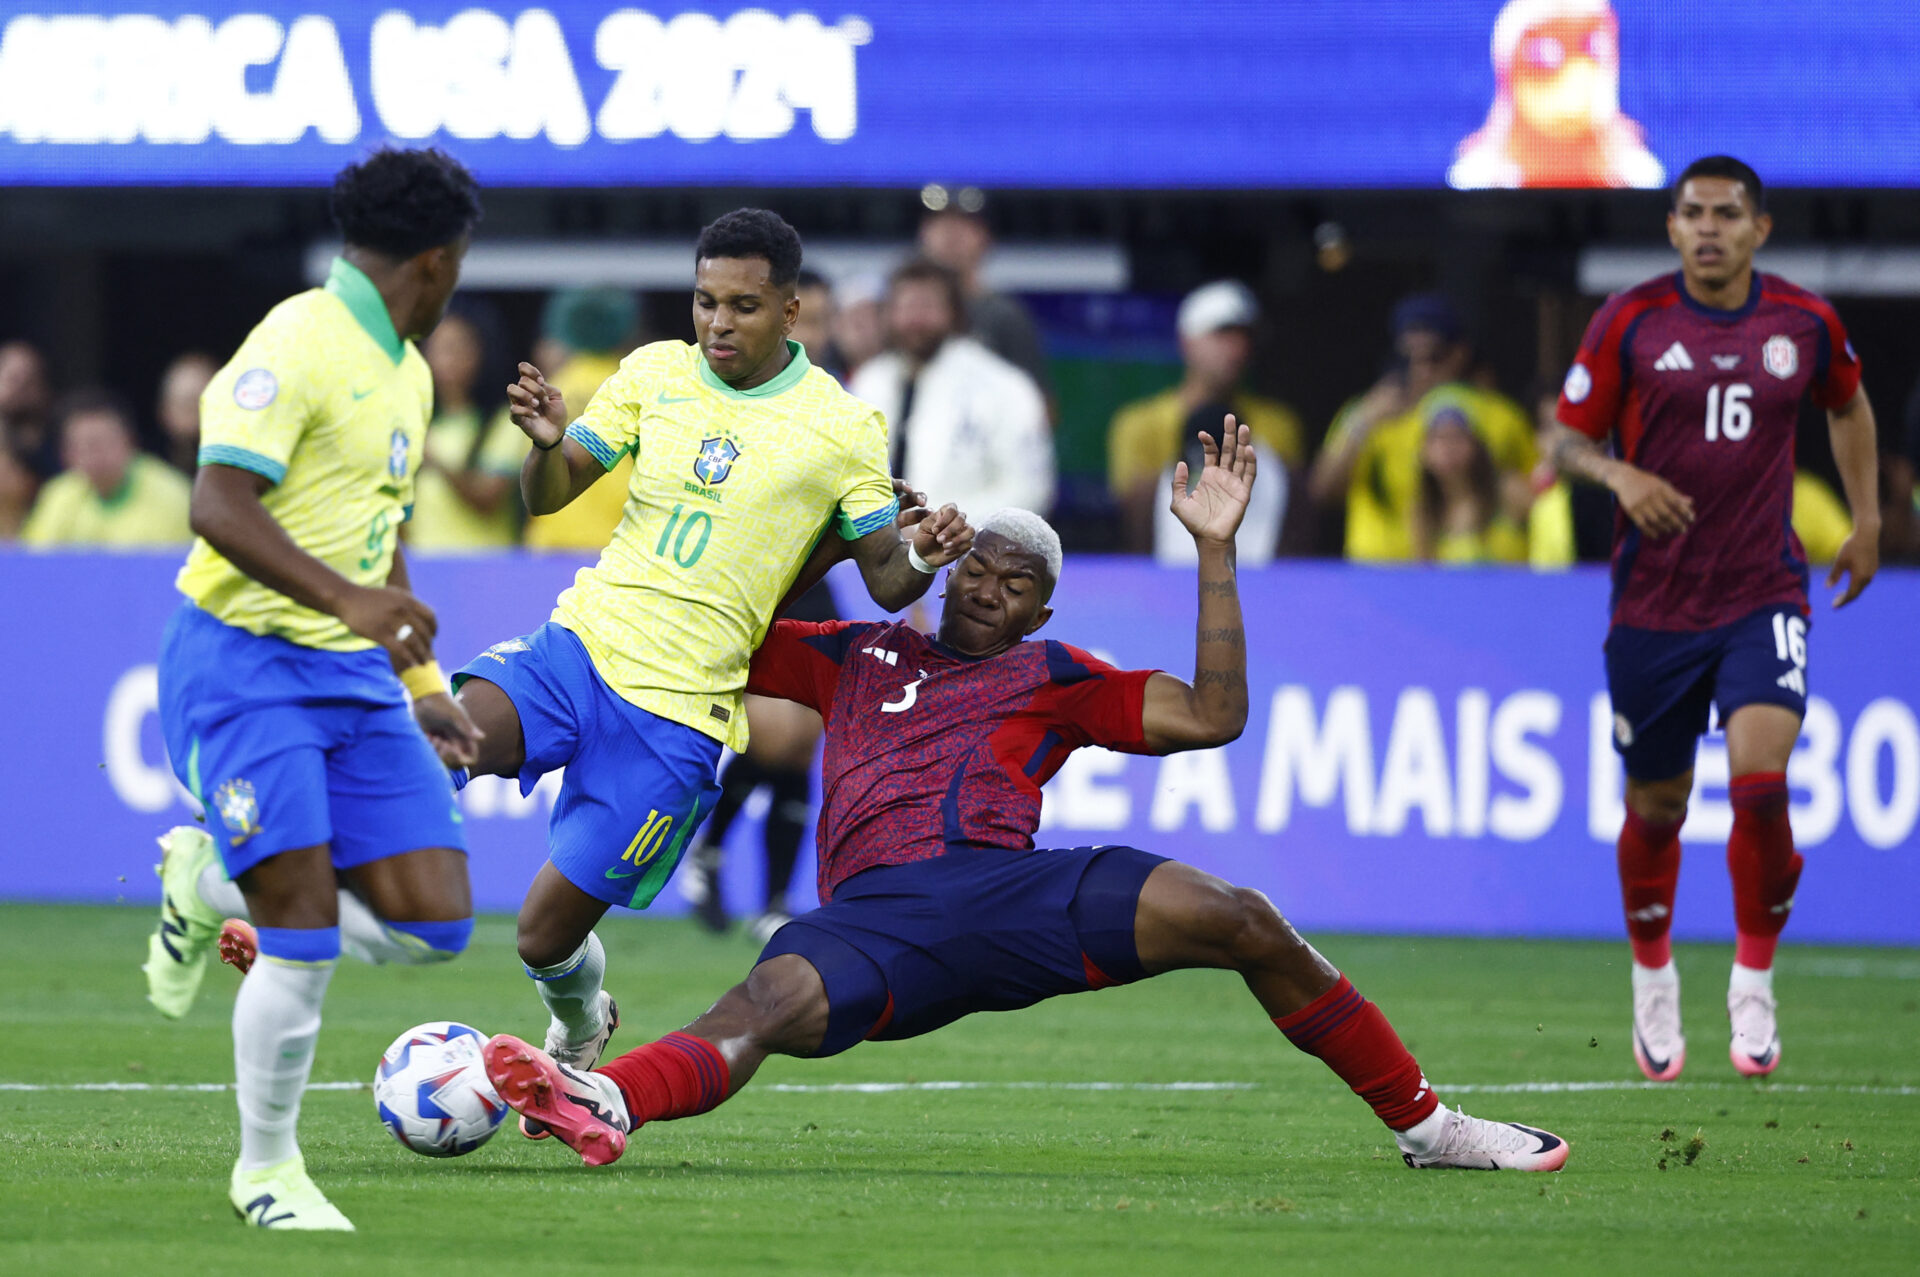 Brasil para em retranca e só empata com Costa Rica na estreia